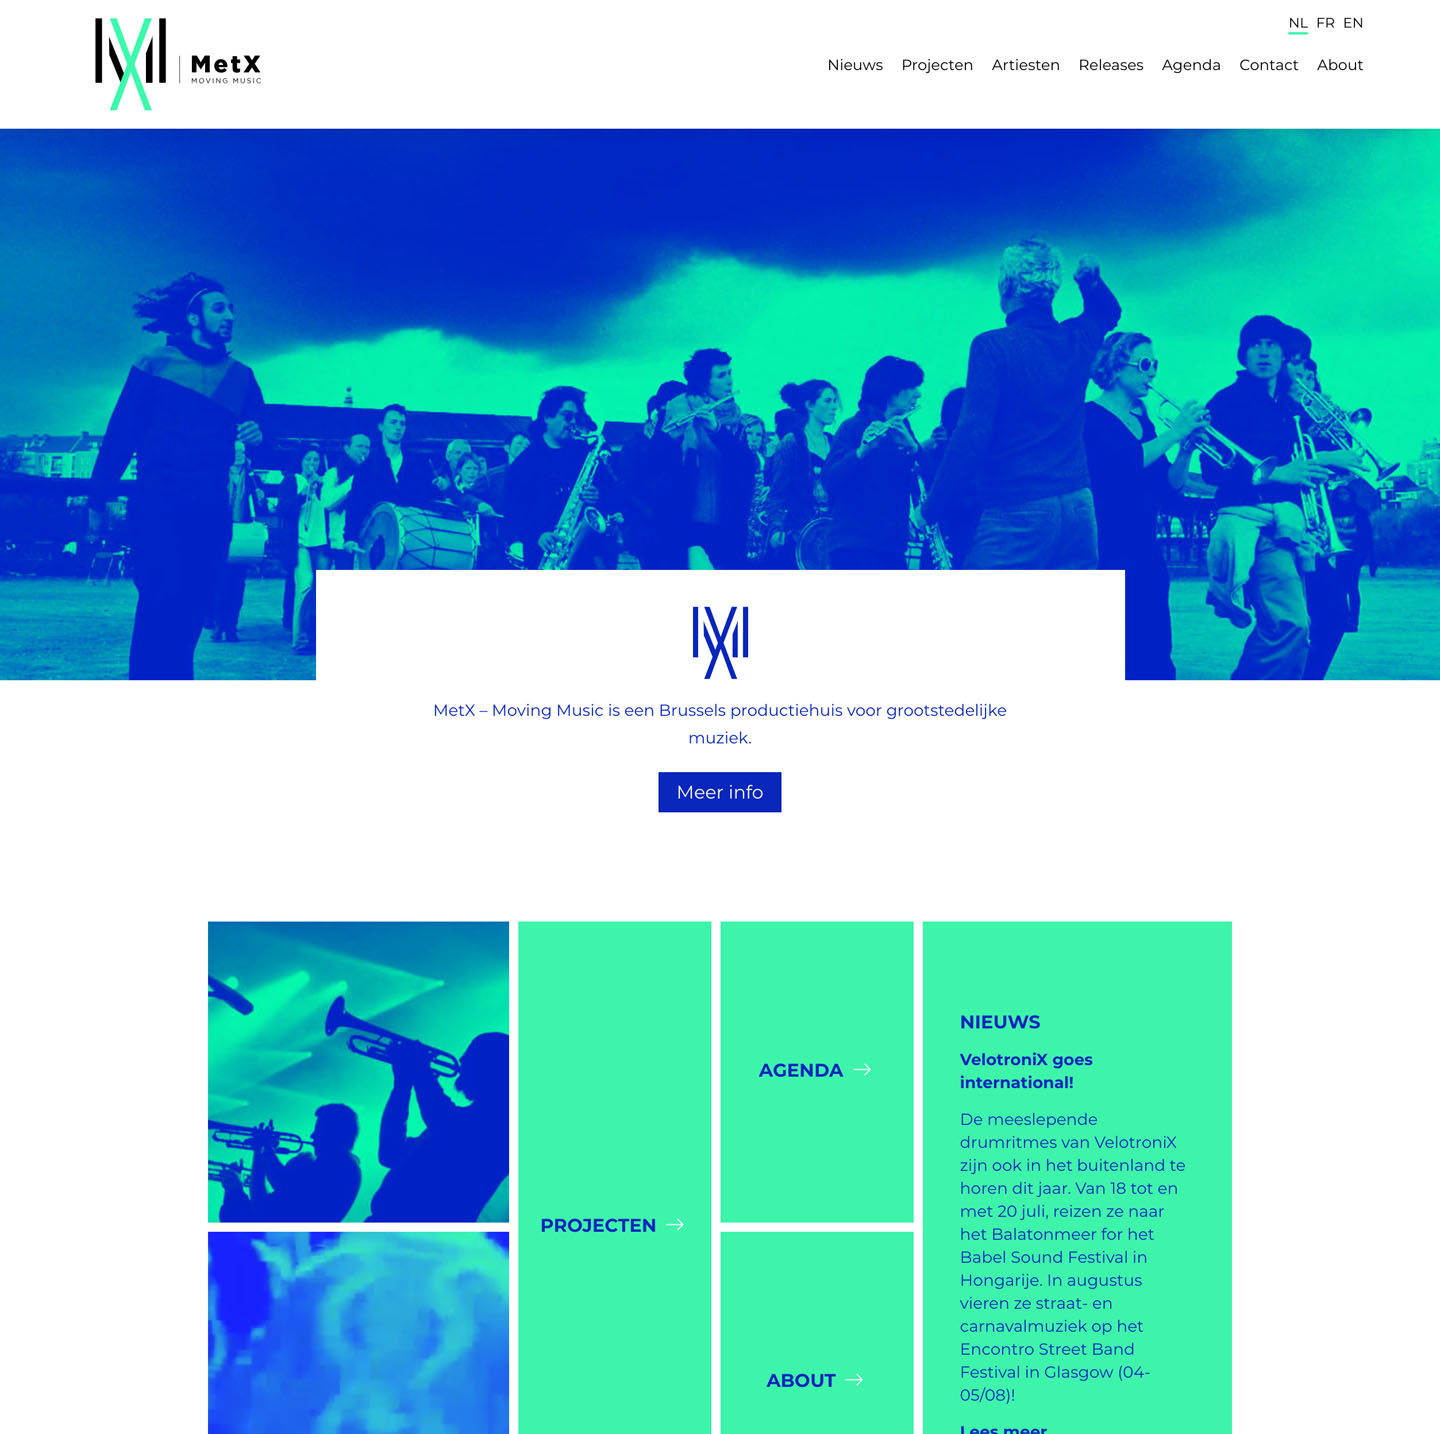 Homepage of MetX.